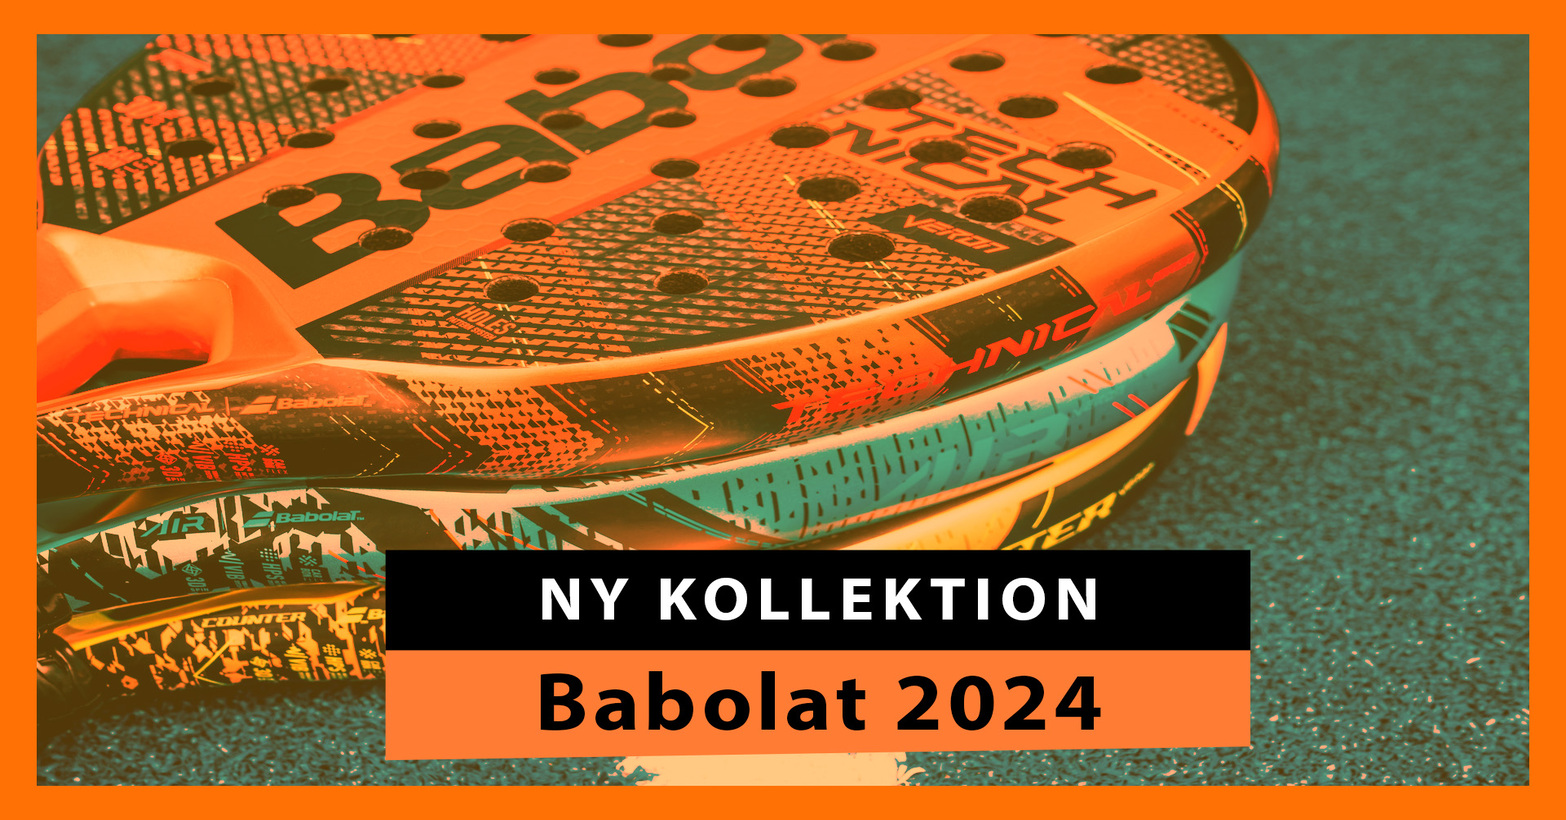 Babolat 2024, padelrackkolektionen skapad för att attackera